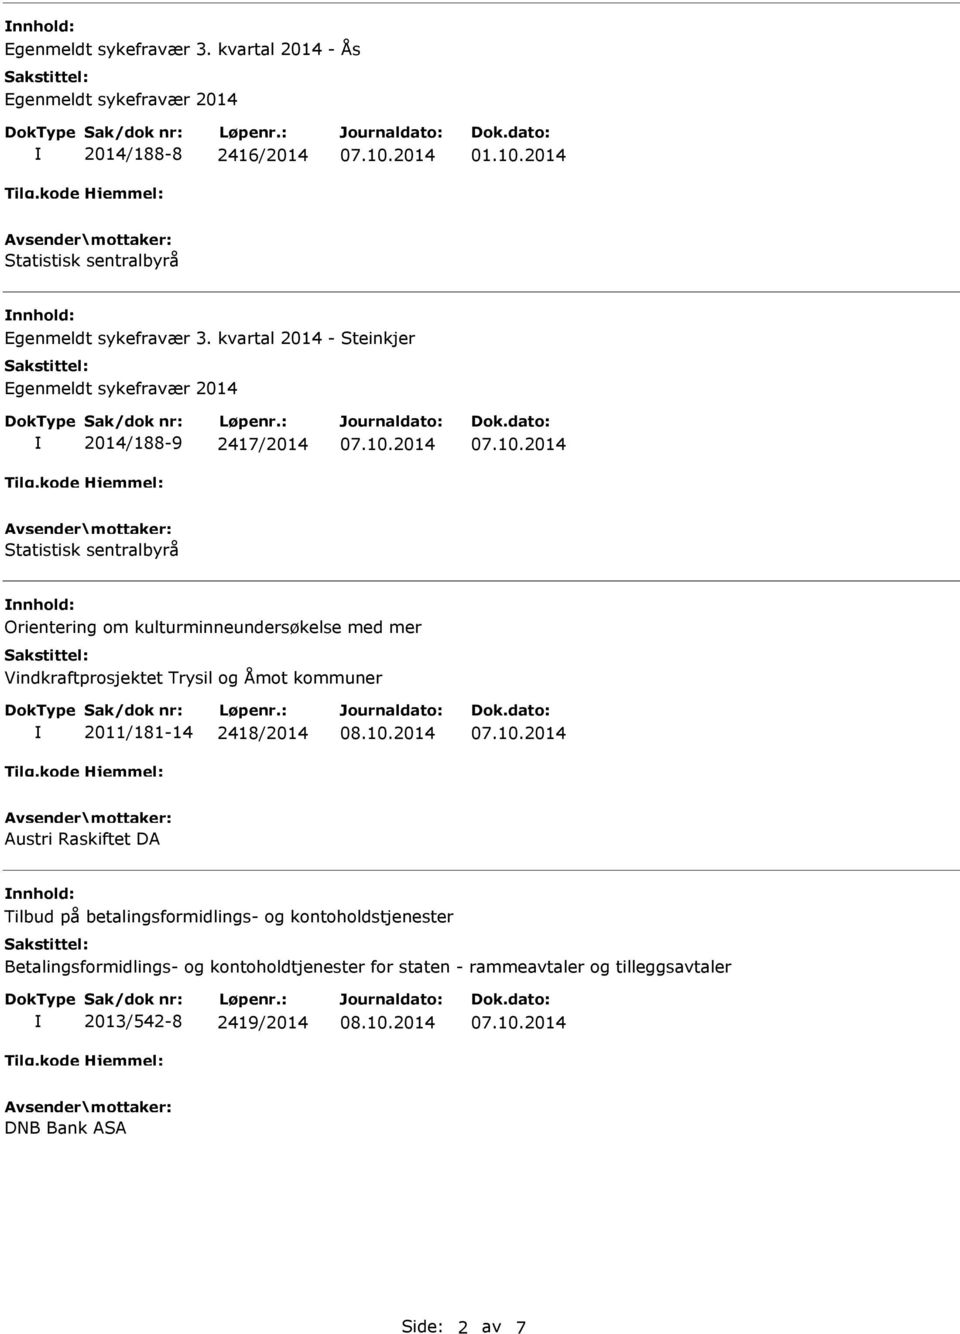 kvartal 2014 - Steinkjer Egenmeldt sykefravær 2014 2014/188-9 2417/2014 Statistisk sentralbyrå Orientering om kulturminneundersøkelse med mer